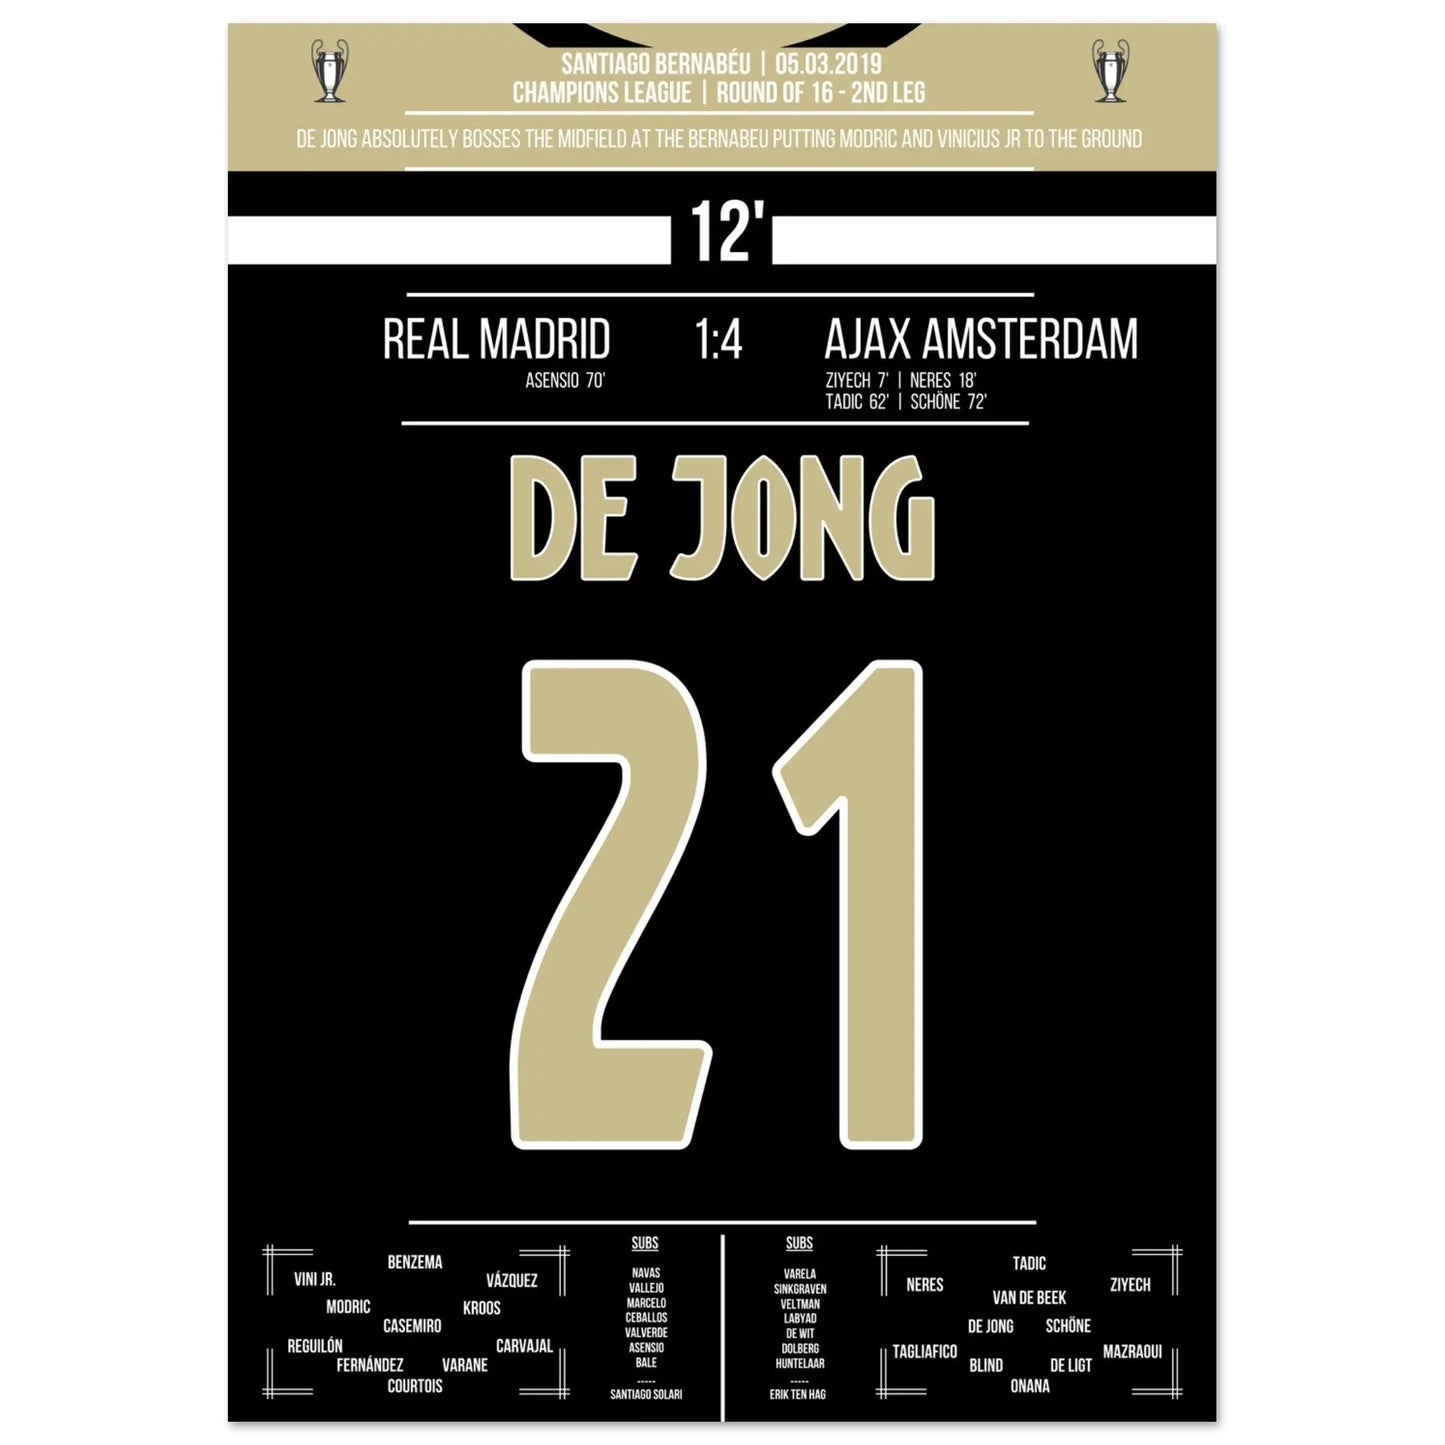 De magische prestatie van De Jong in de achtste finales van de Champions League tegen Real